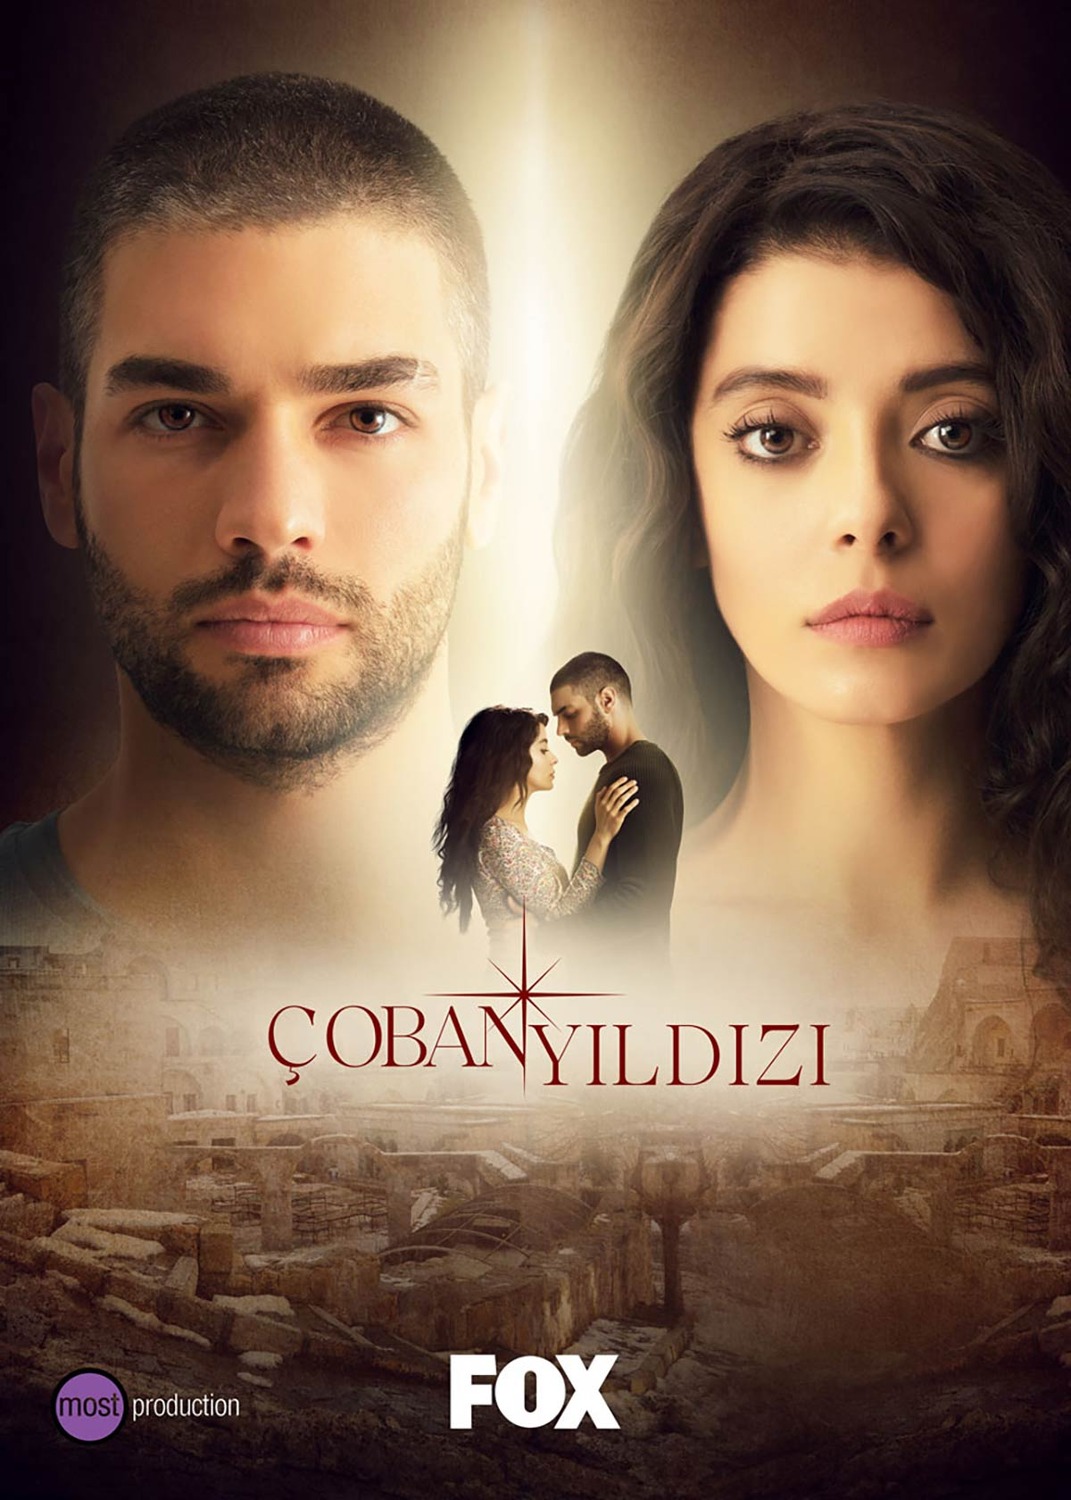 Extra Large TV Poster Image for Çoban Yildizi 